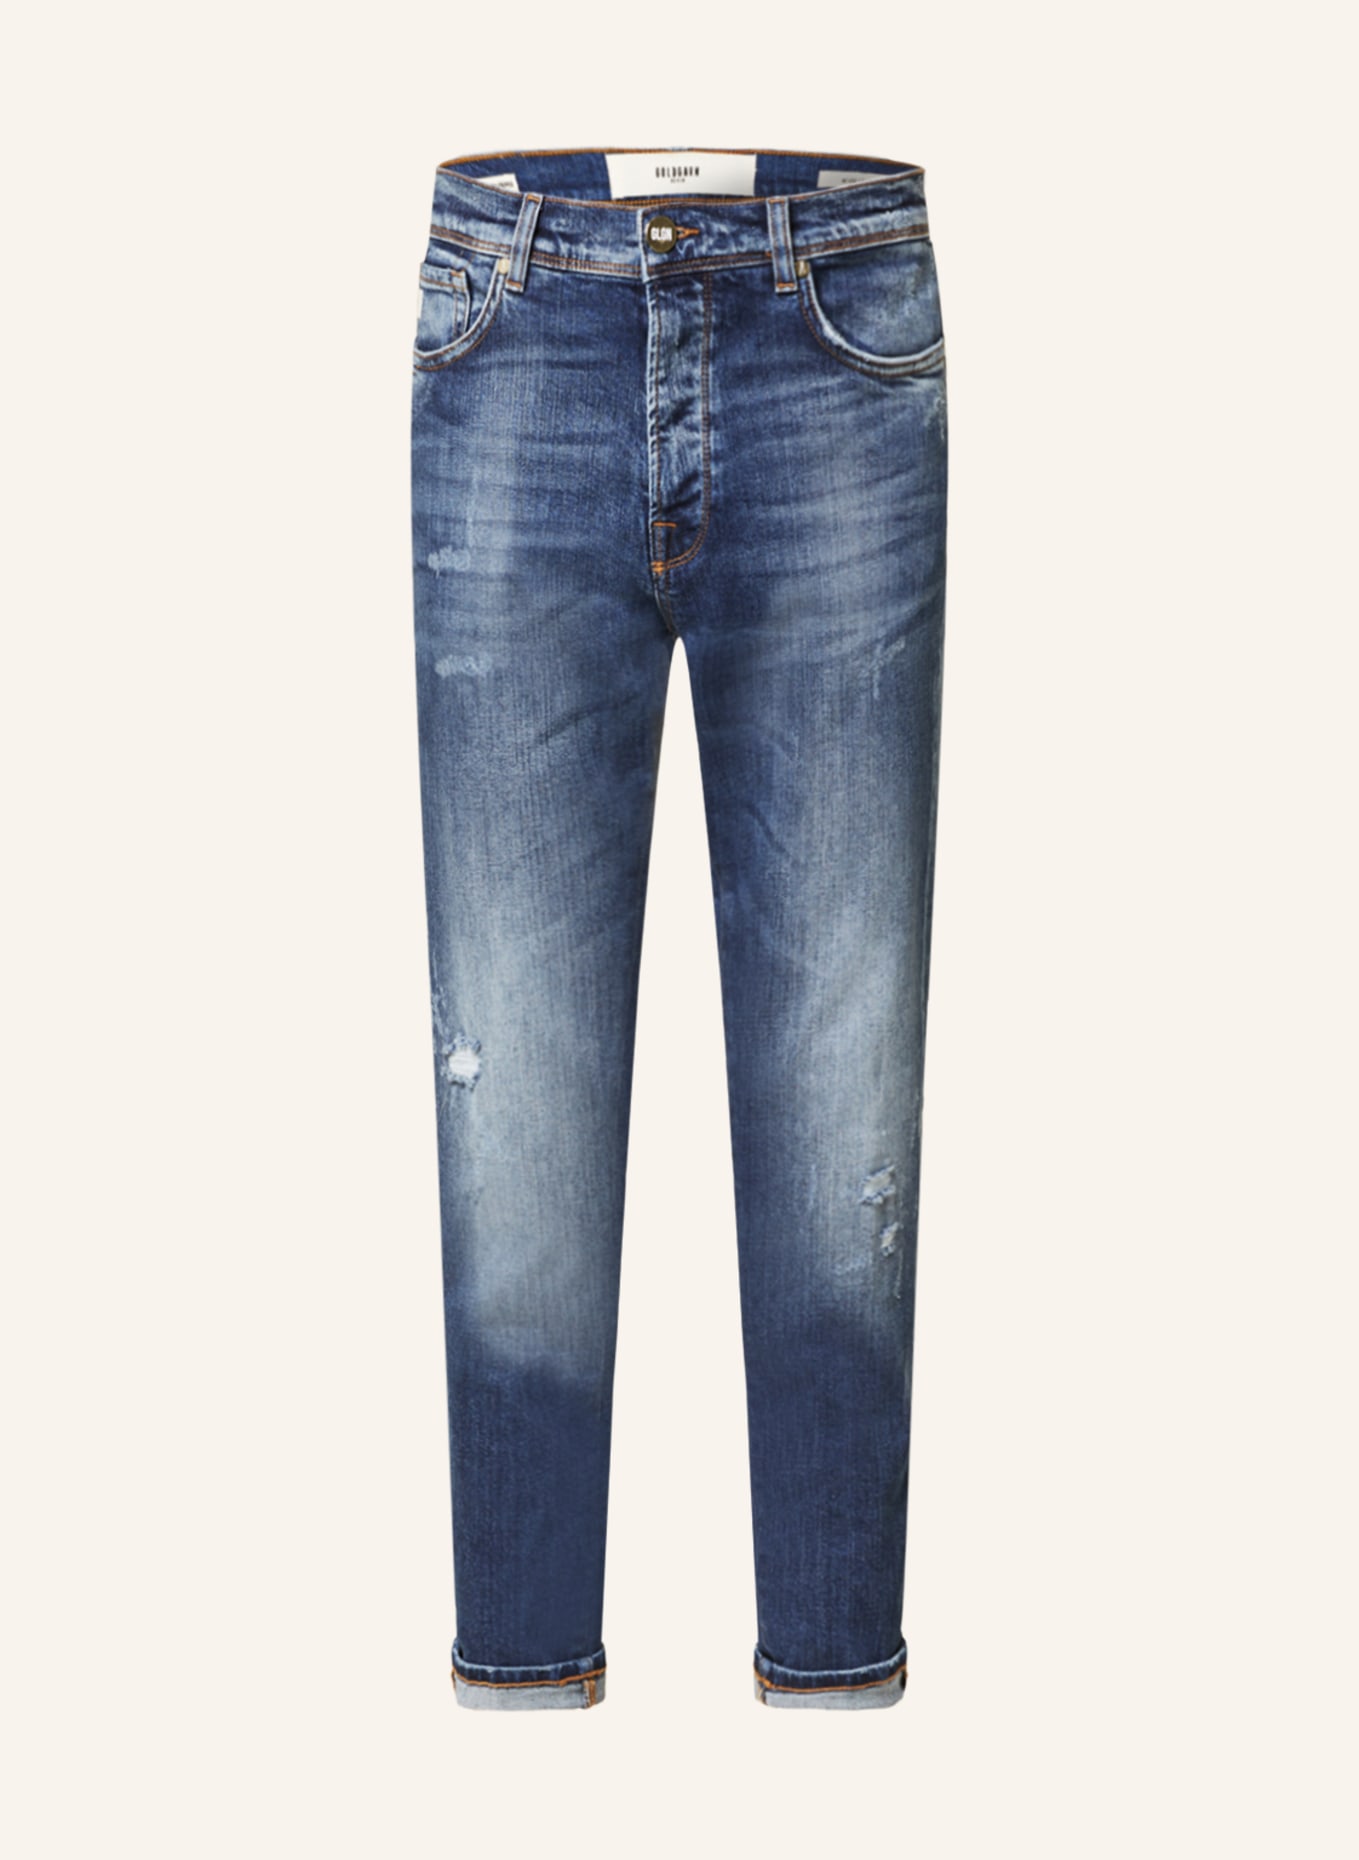 GOLDGARN DENIM Jeans RHEINAU Relaxed Cropped Fit mit verkürzter Beinlänge, Farbe: 1090 MID BLUE (Bild 1)